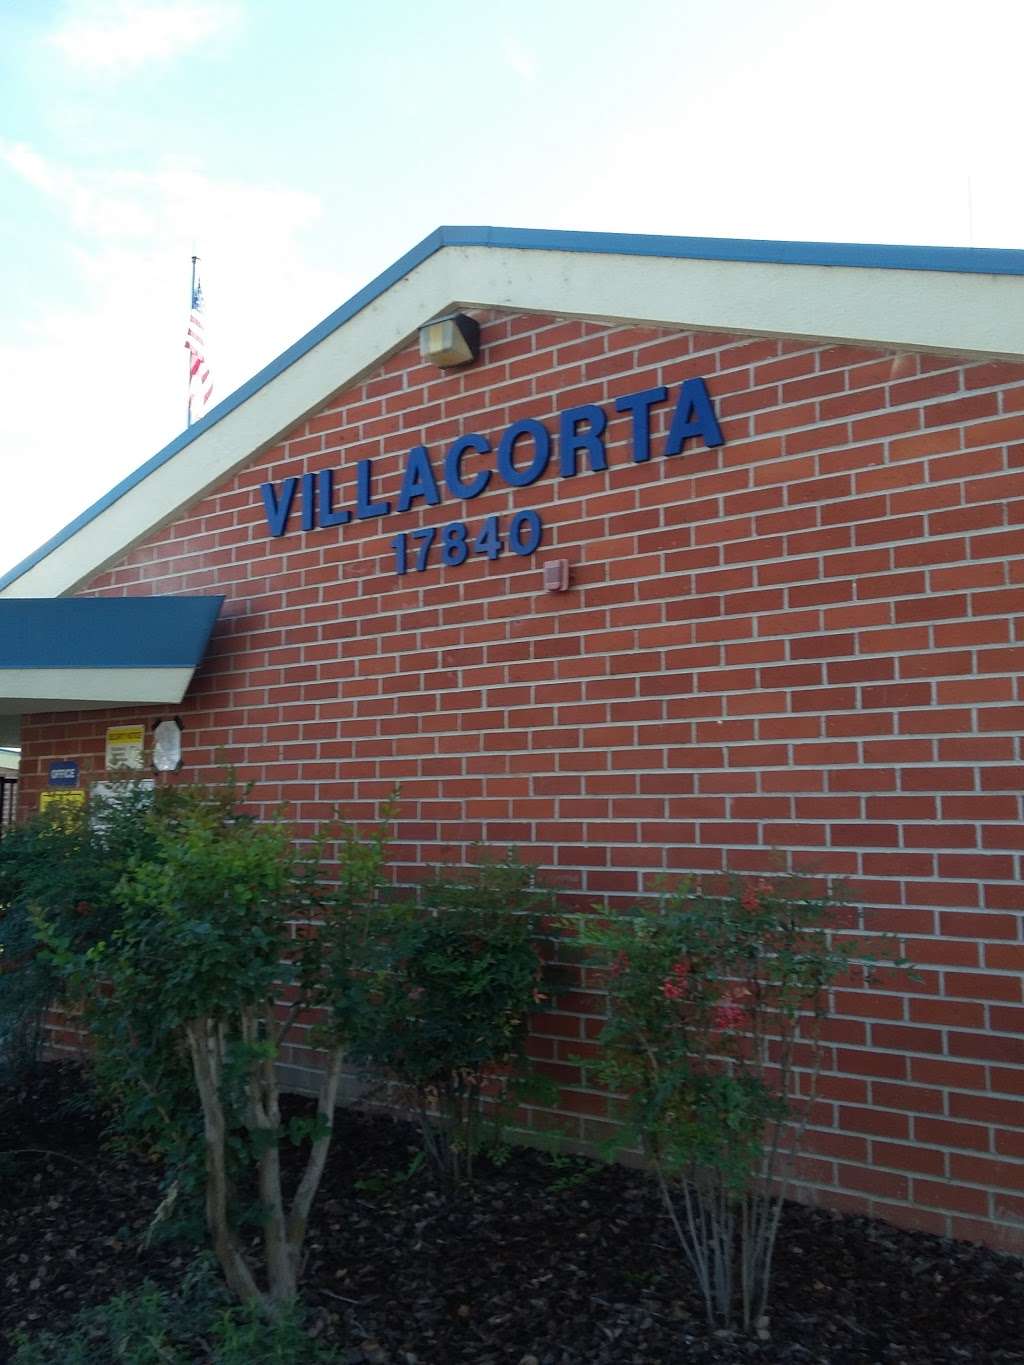 Villacorta Elementary School | 17840 Villa Corta St, La Puente, CA 91744 | Phone: (626) 964-2385